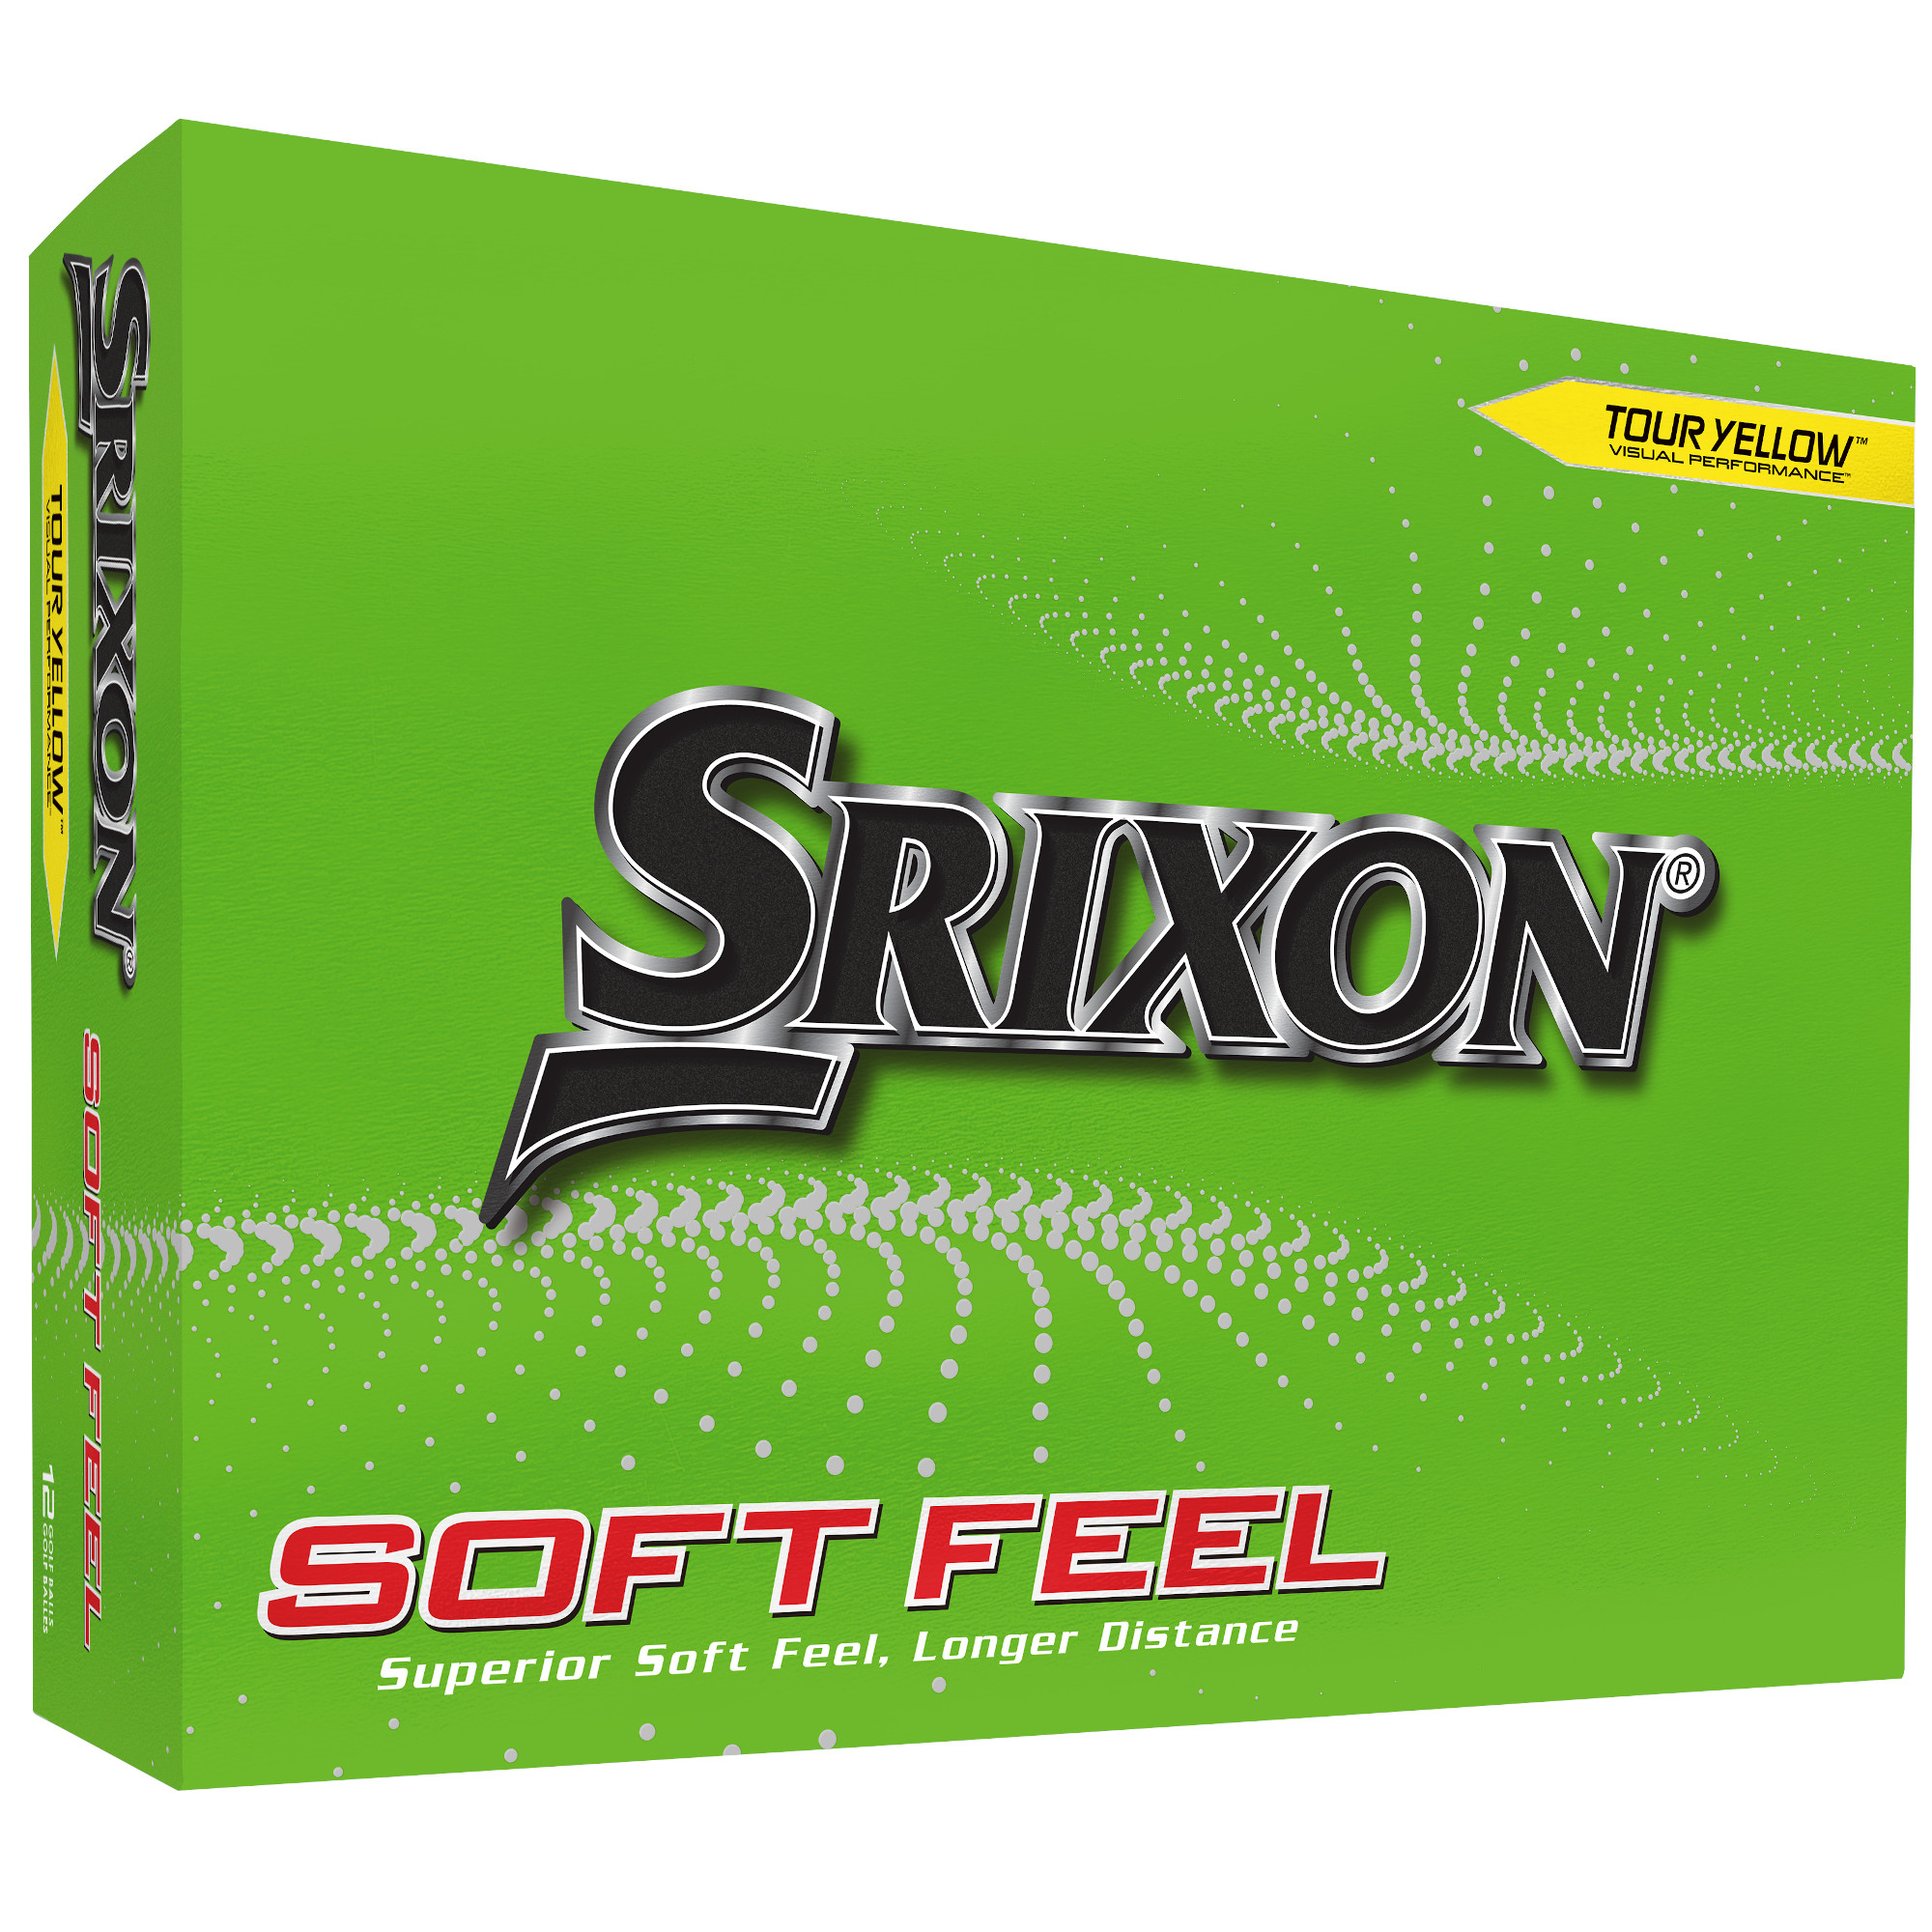 Srixon Soft Feel Golfbälle bedruckt, gelb (VPE à 12 Bälle)